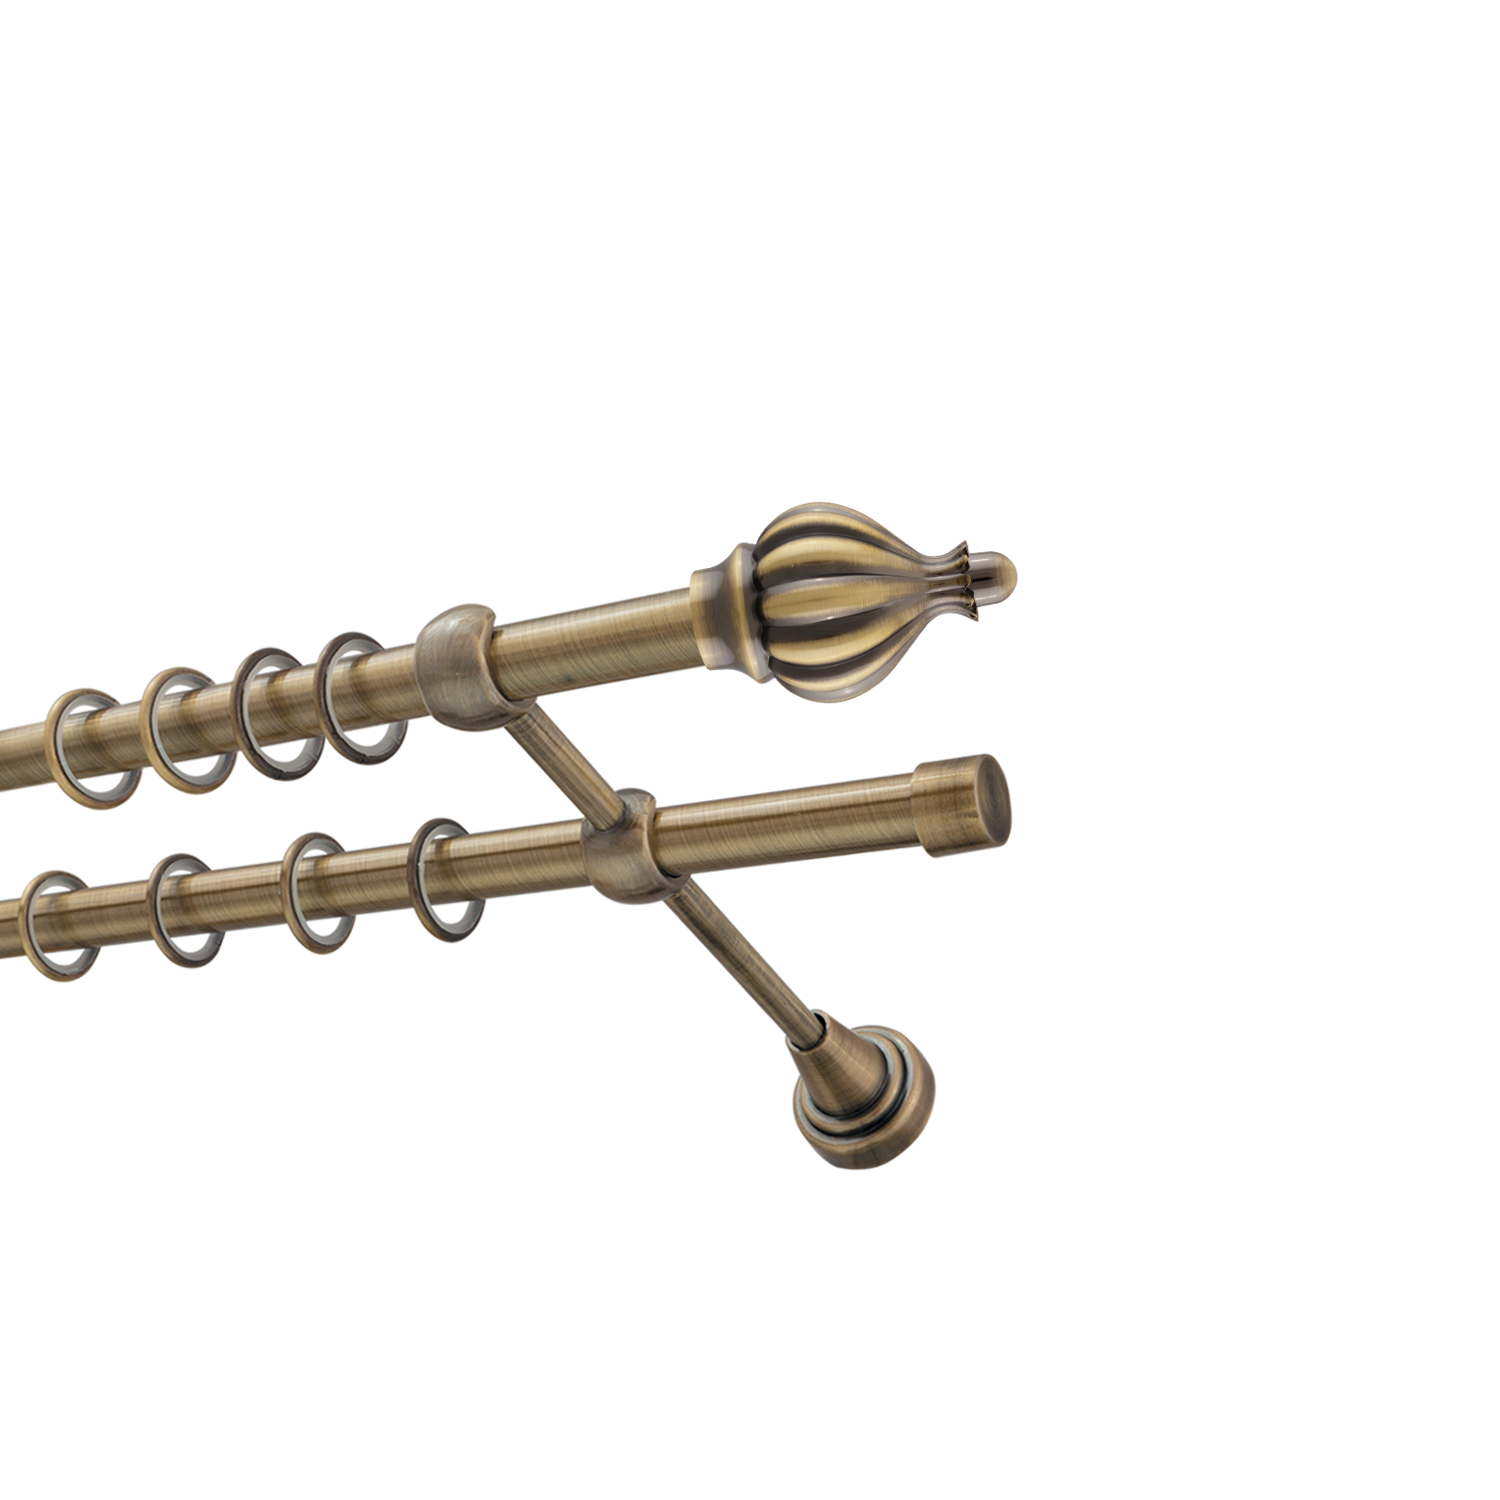 Металлический карниз для штор Афродита, двухрядный 16/16 мм, бронза, гладкая штанга, длина 240 см - фото Wikidecor.ru